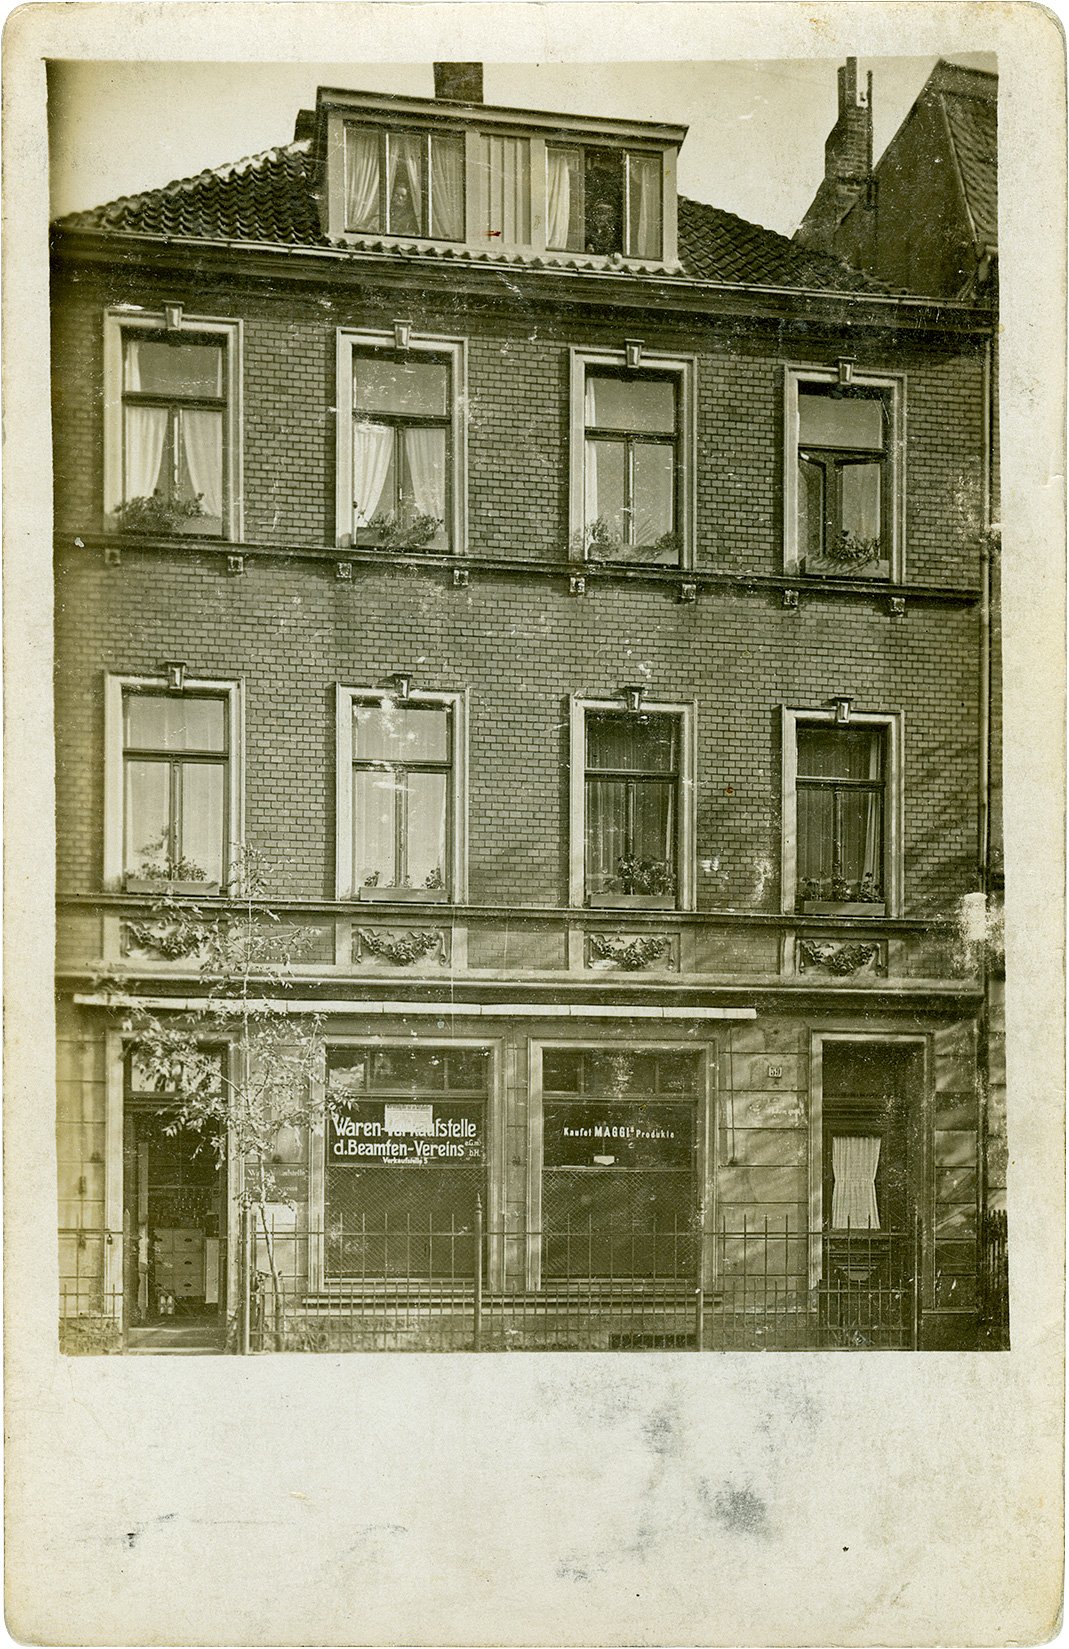 Postkarte: Wohn- und Geschäftshaus mit der Warenverkaufsstelle des Beamtenvereins, Südstraße 59. (Stadtmuseum Münster CC BY-NC-SA)